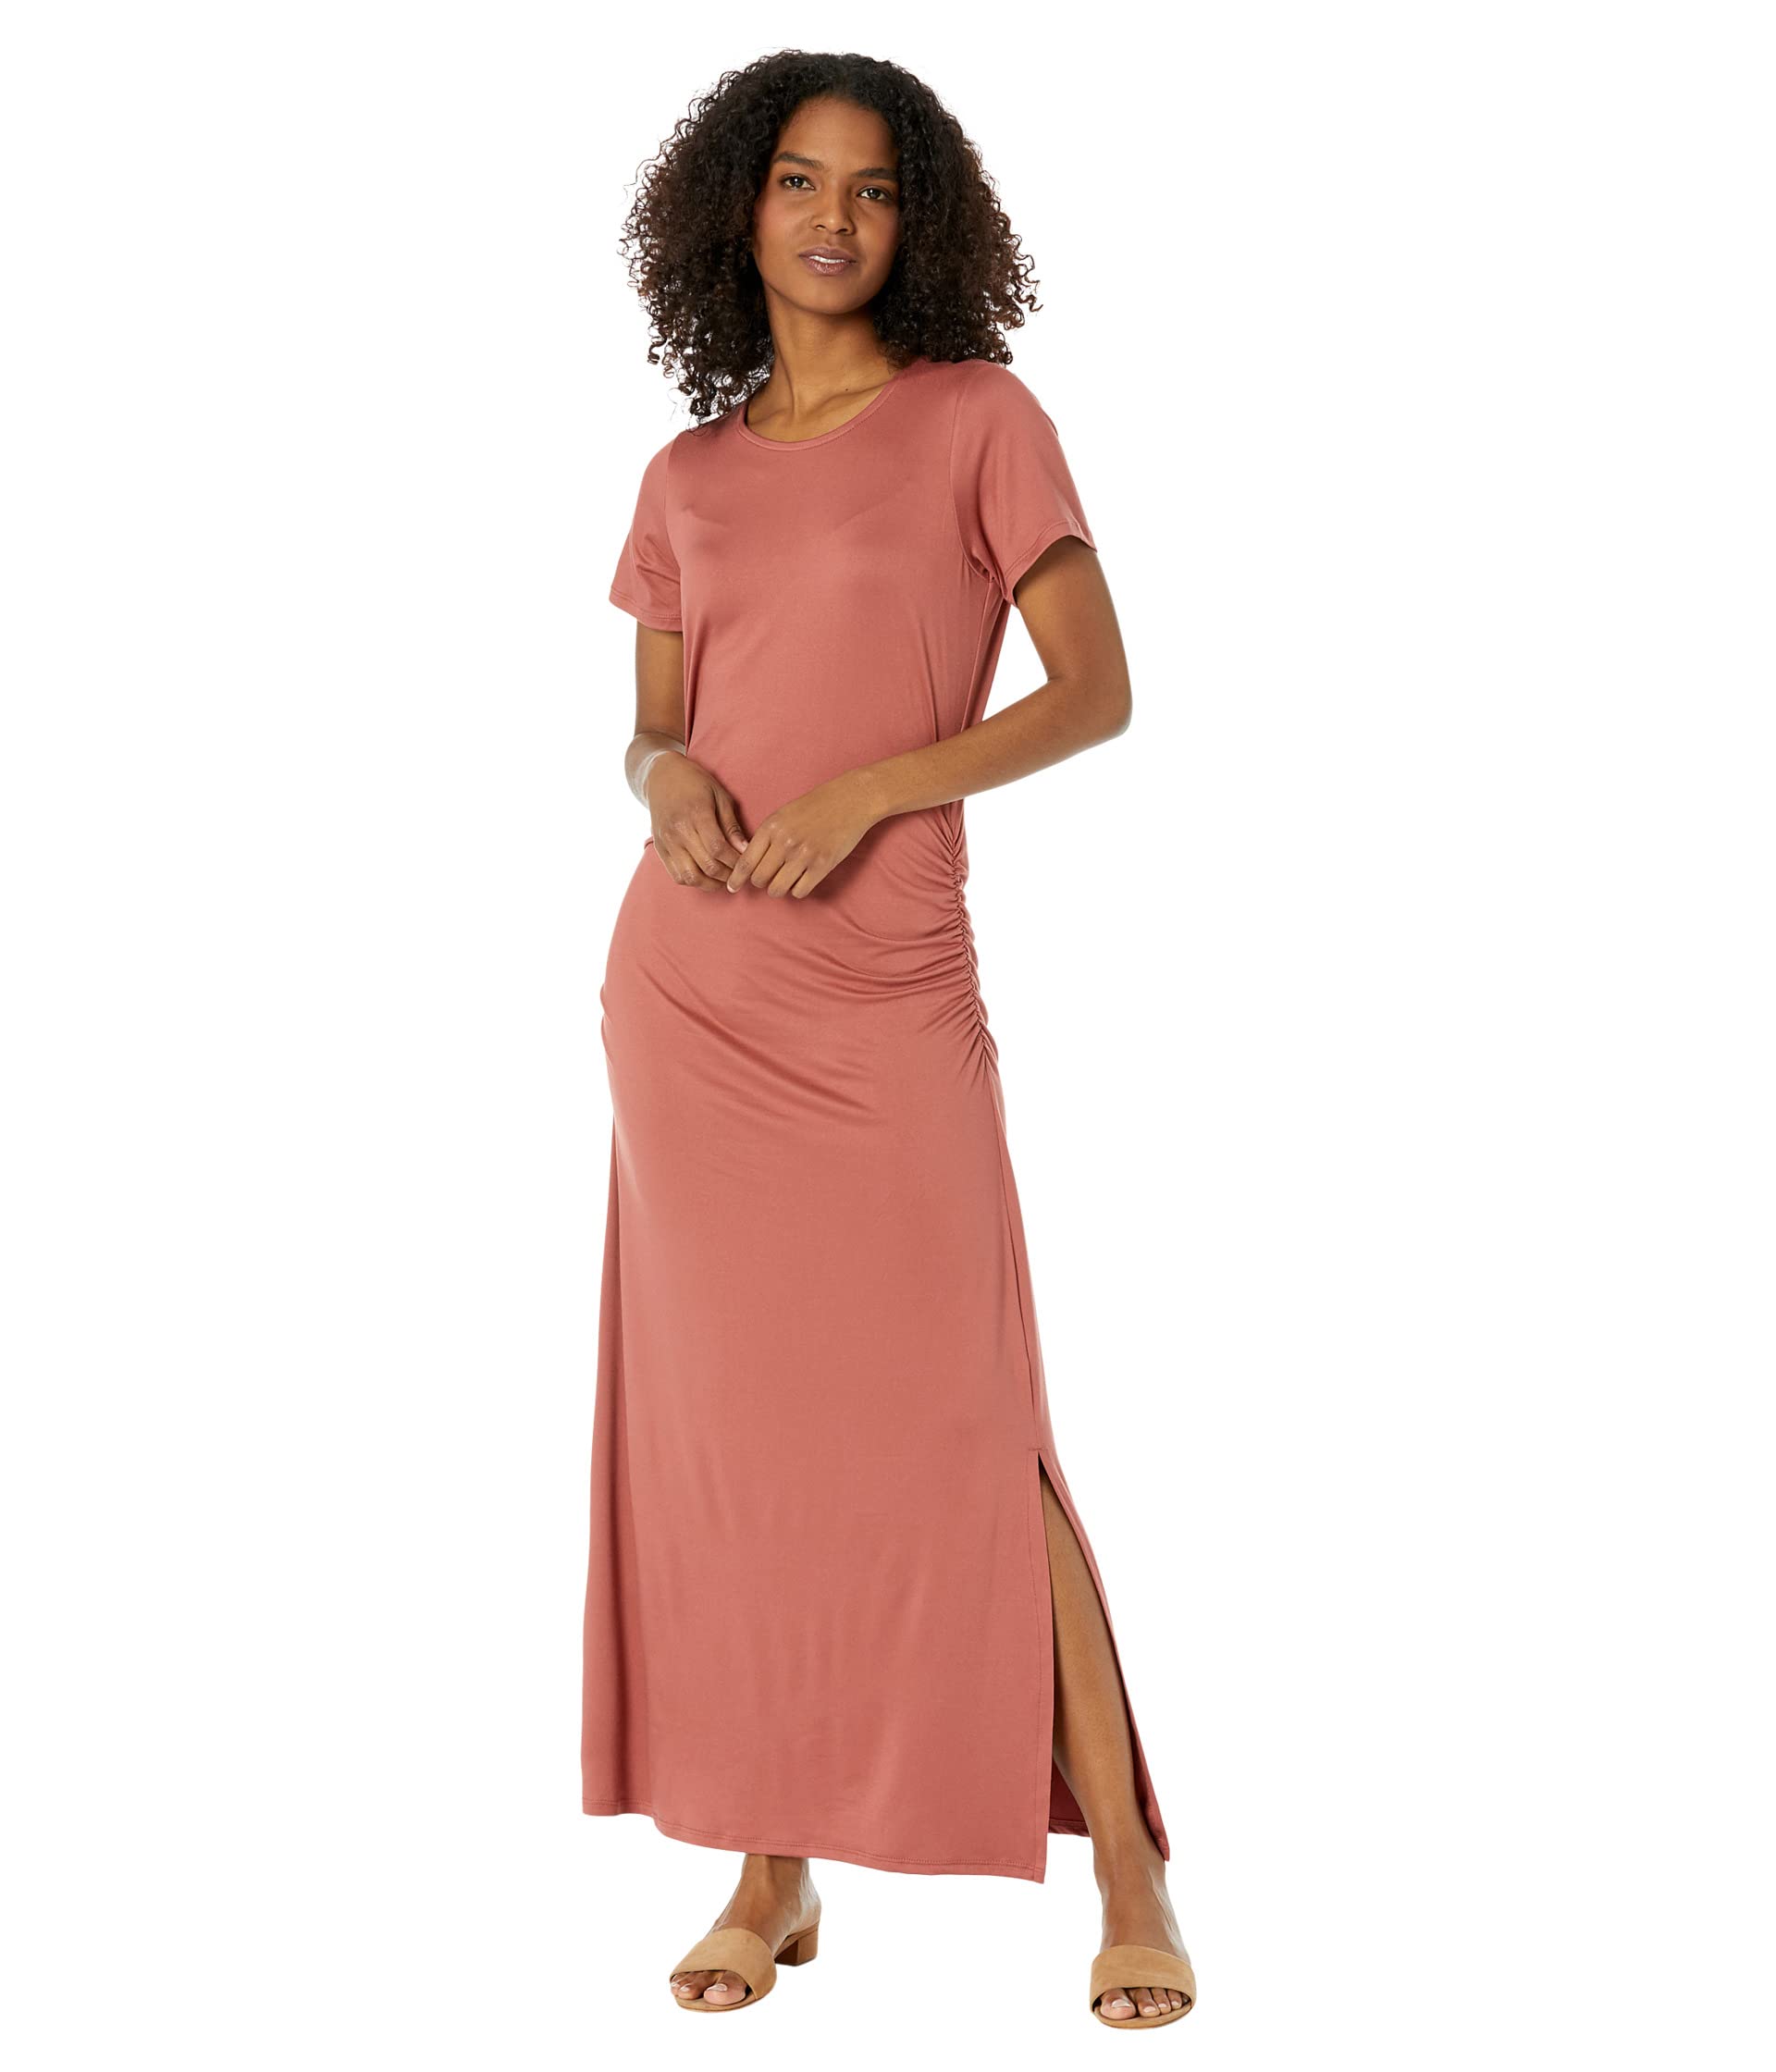 Макси-платье с короткими рукавами и боковыми рюшами Bobeau